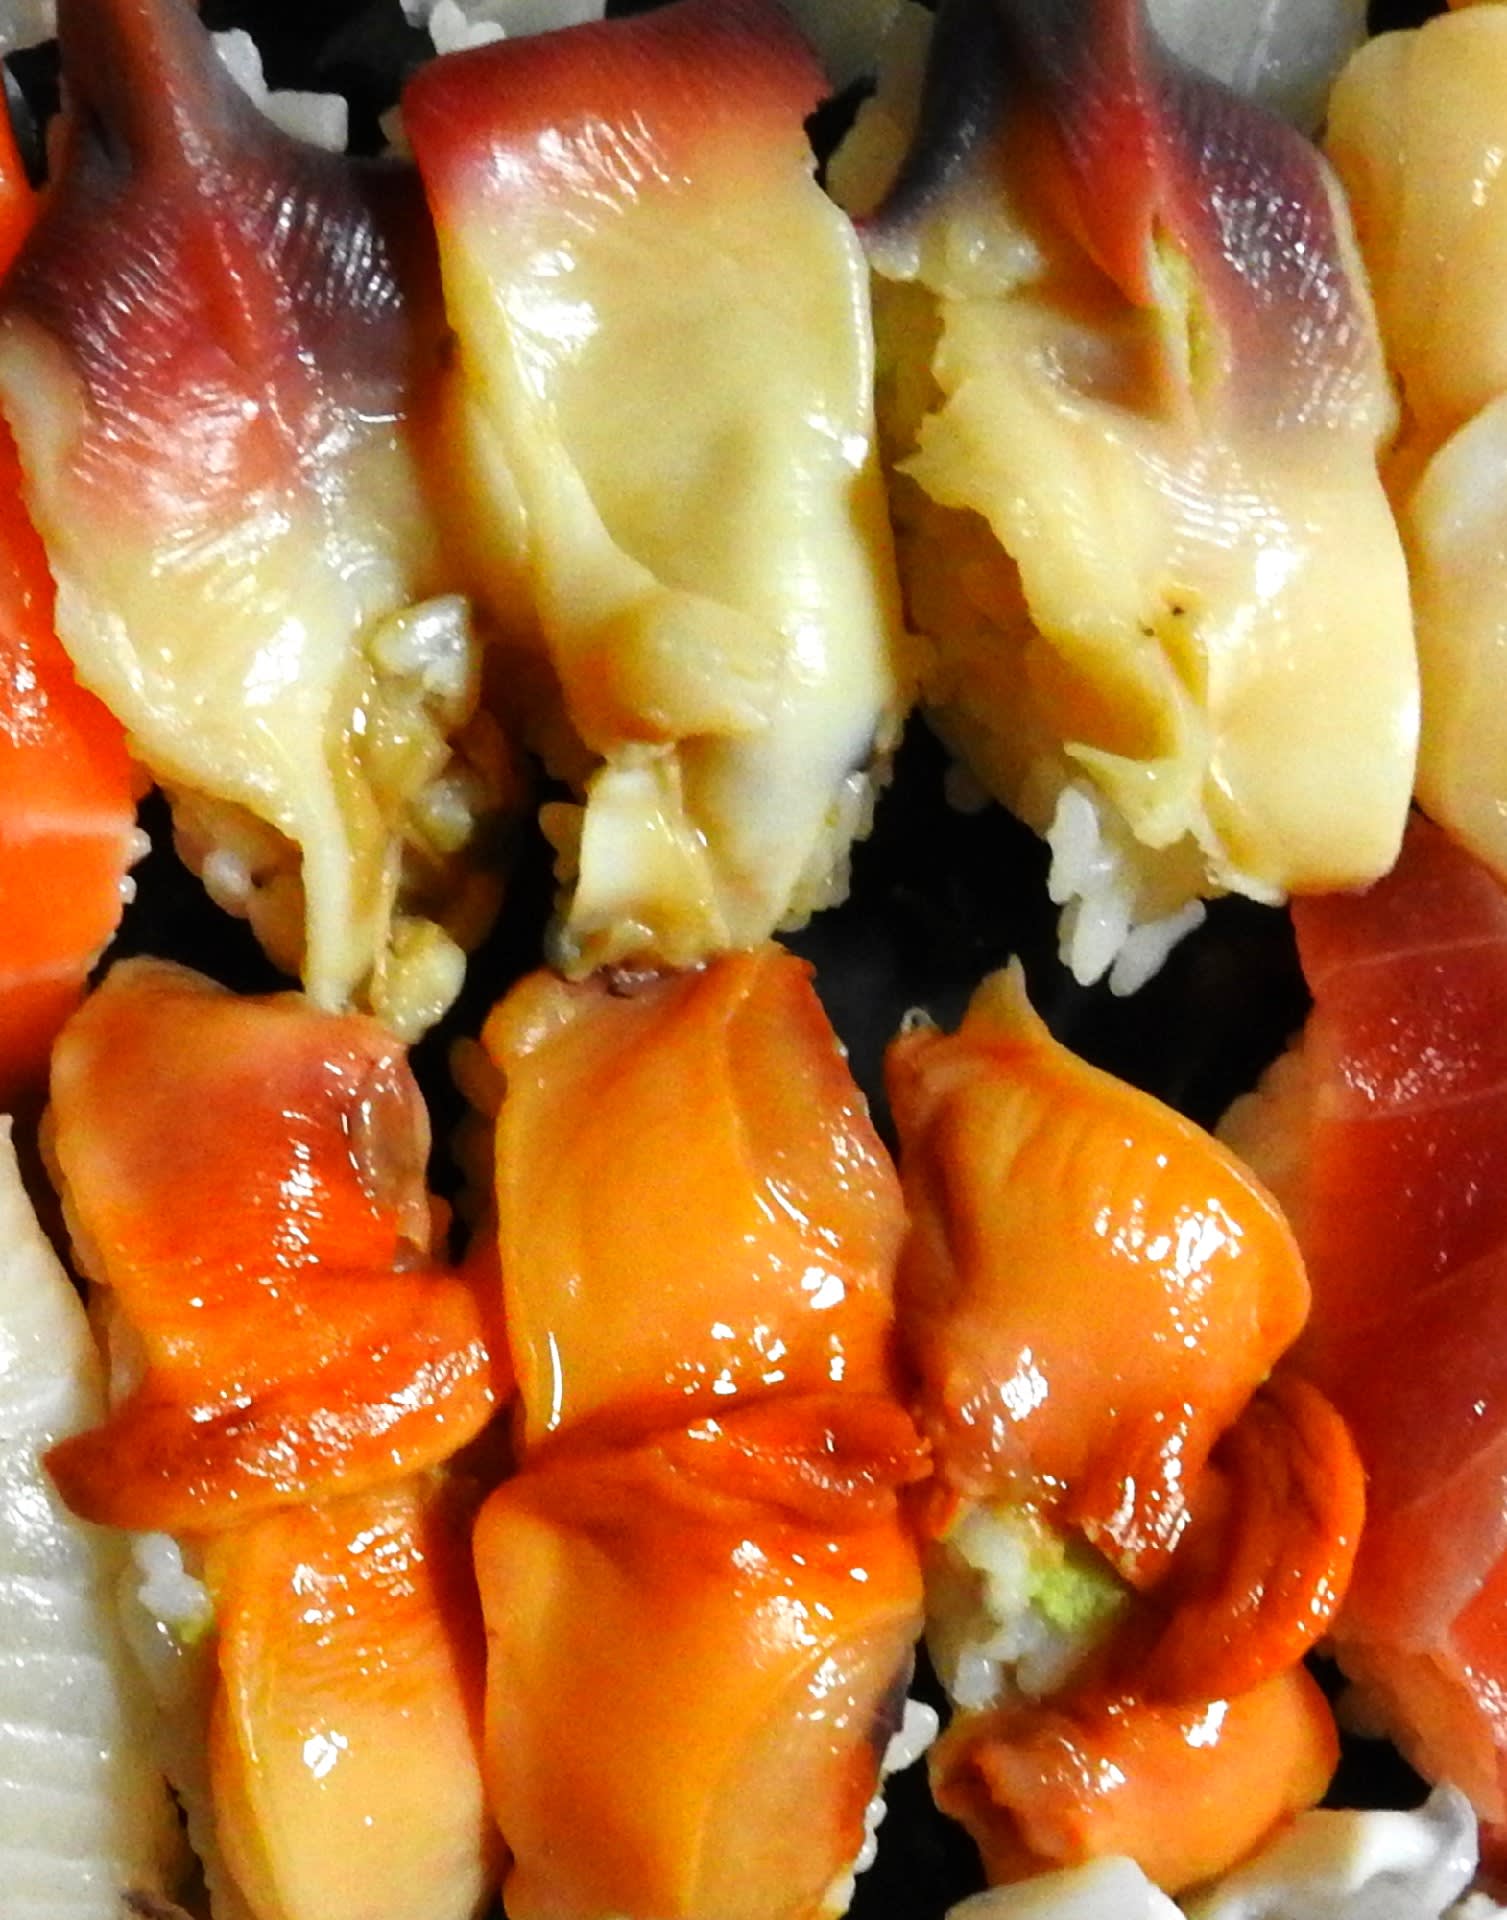 雪が積もったので寿司を握りました 11 21 赤貝とほっきのサバキとやりいか 鳥とパイプと日本酒のおっさんメモ